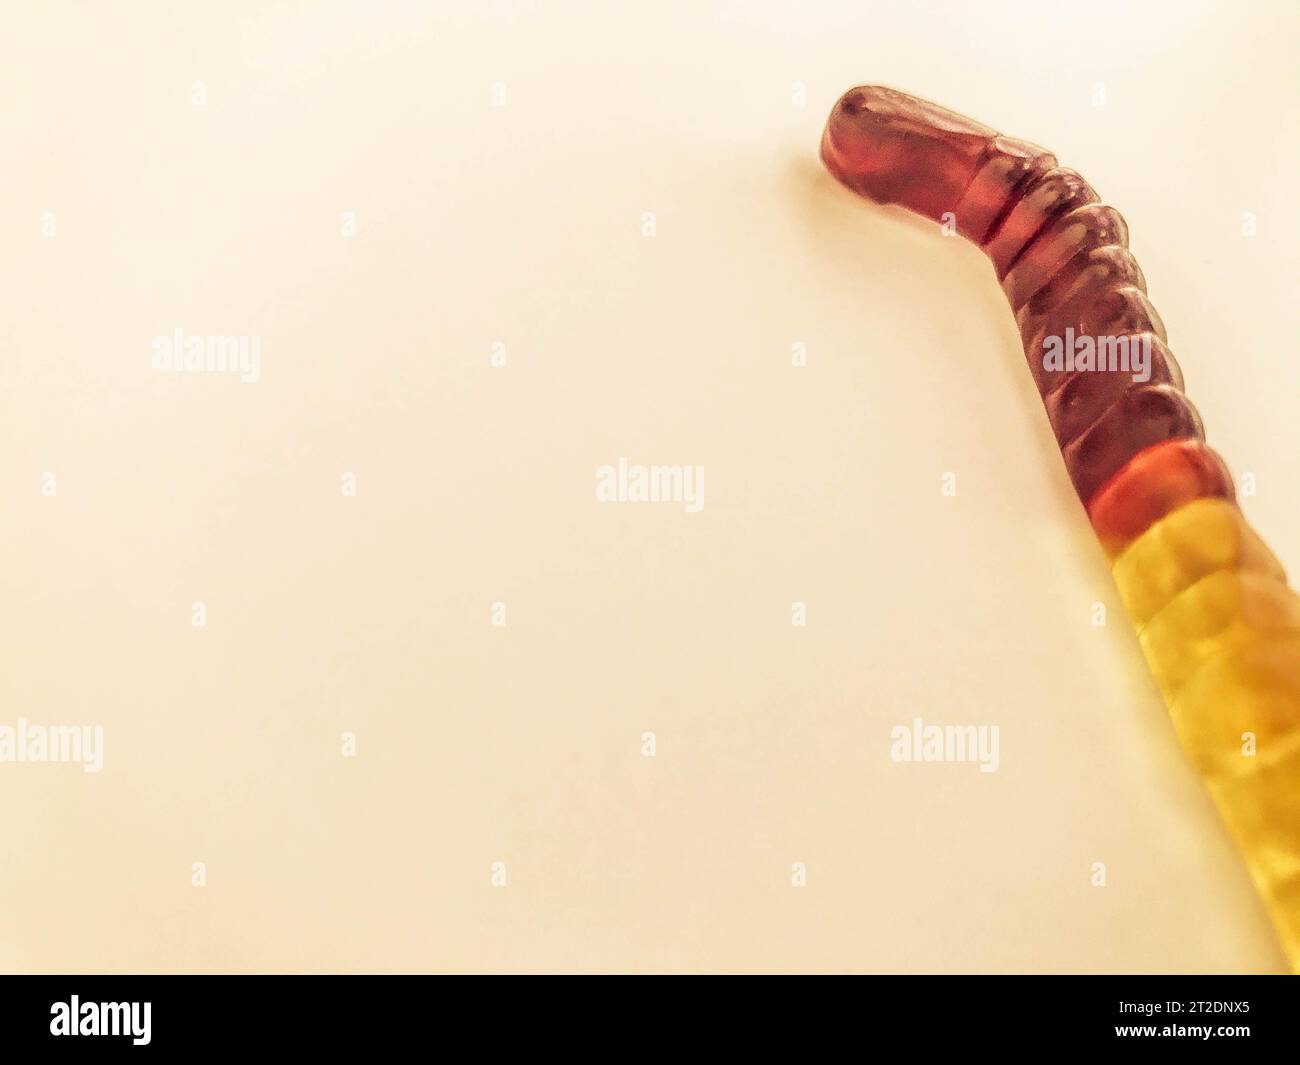 Gummiwürmer liegen auf einem weißen rosa matten Hintergrund. Helle, mundtränende gelatinöse Würmer von bräunlich-gelber Farbe. Köstliche Süßigkeiten. Behandlung ch Stockfoto